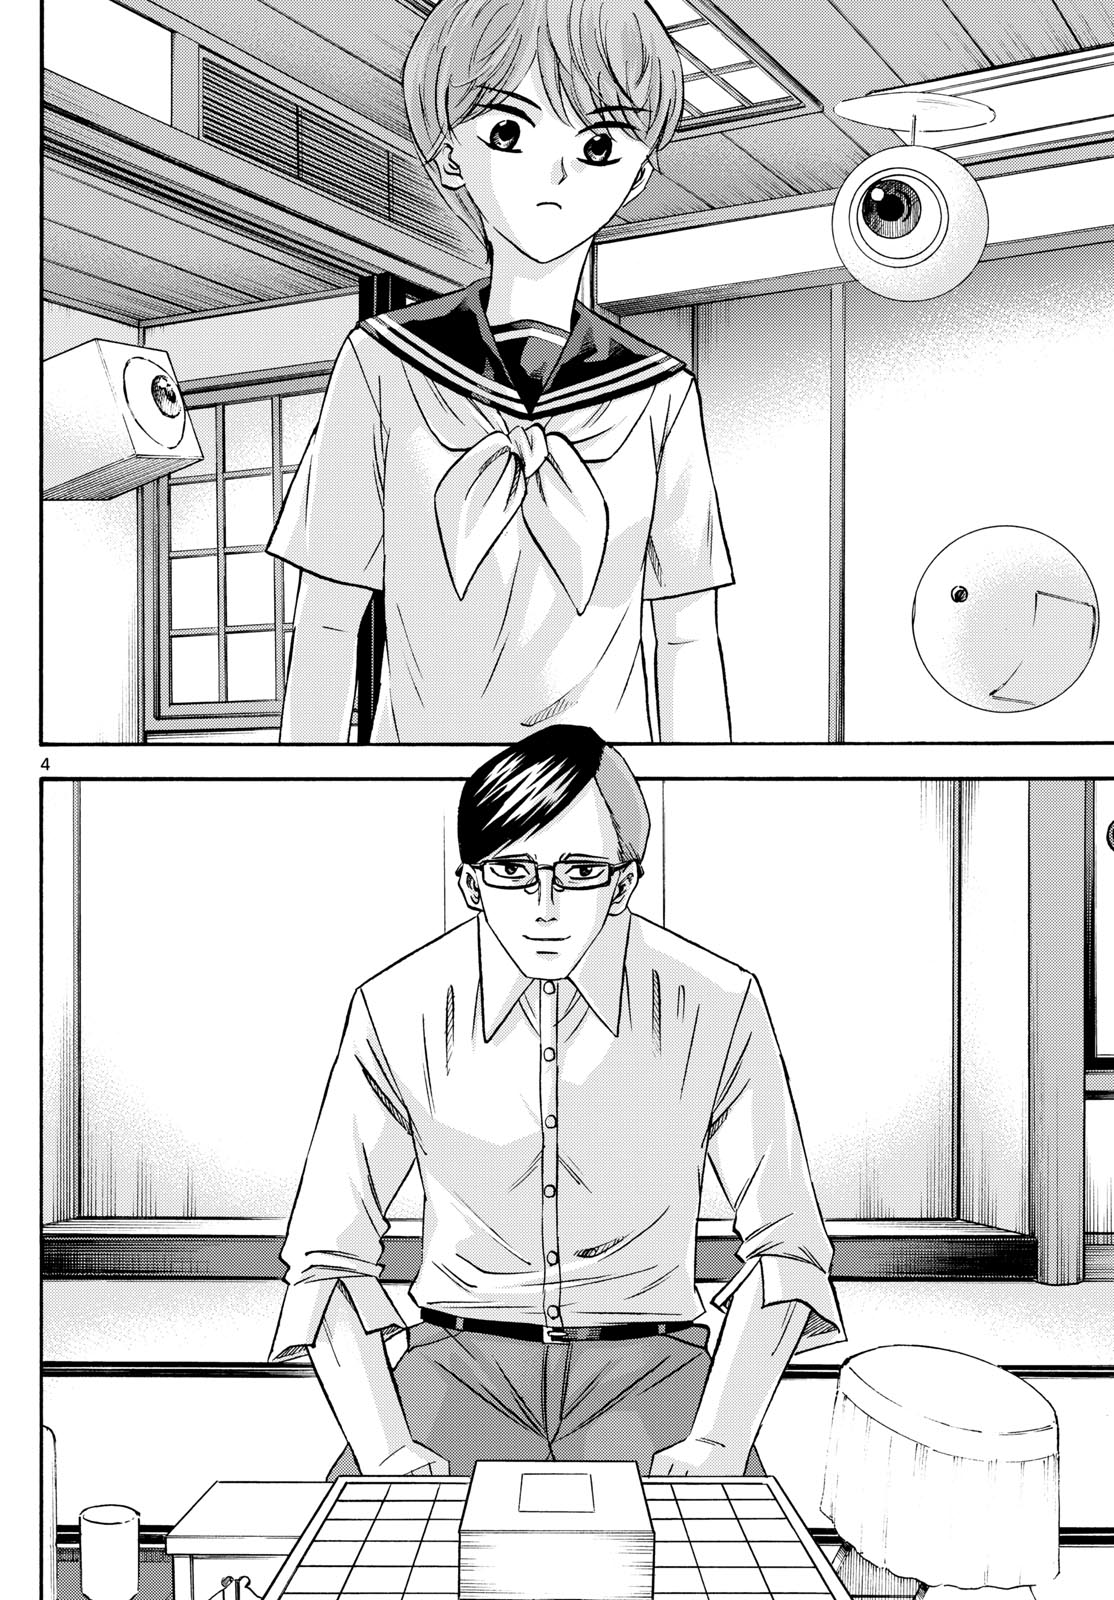 Tatsu to Ichigo - Chapter 196 - Page 4